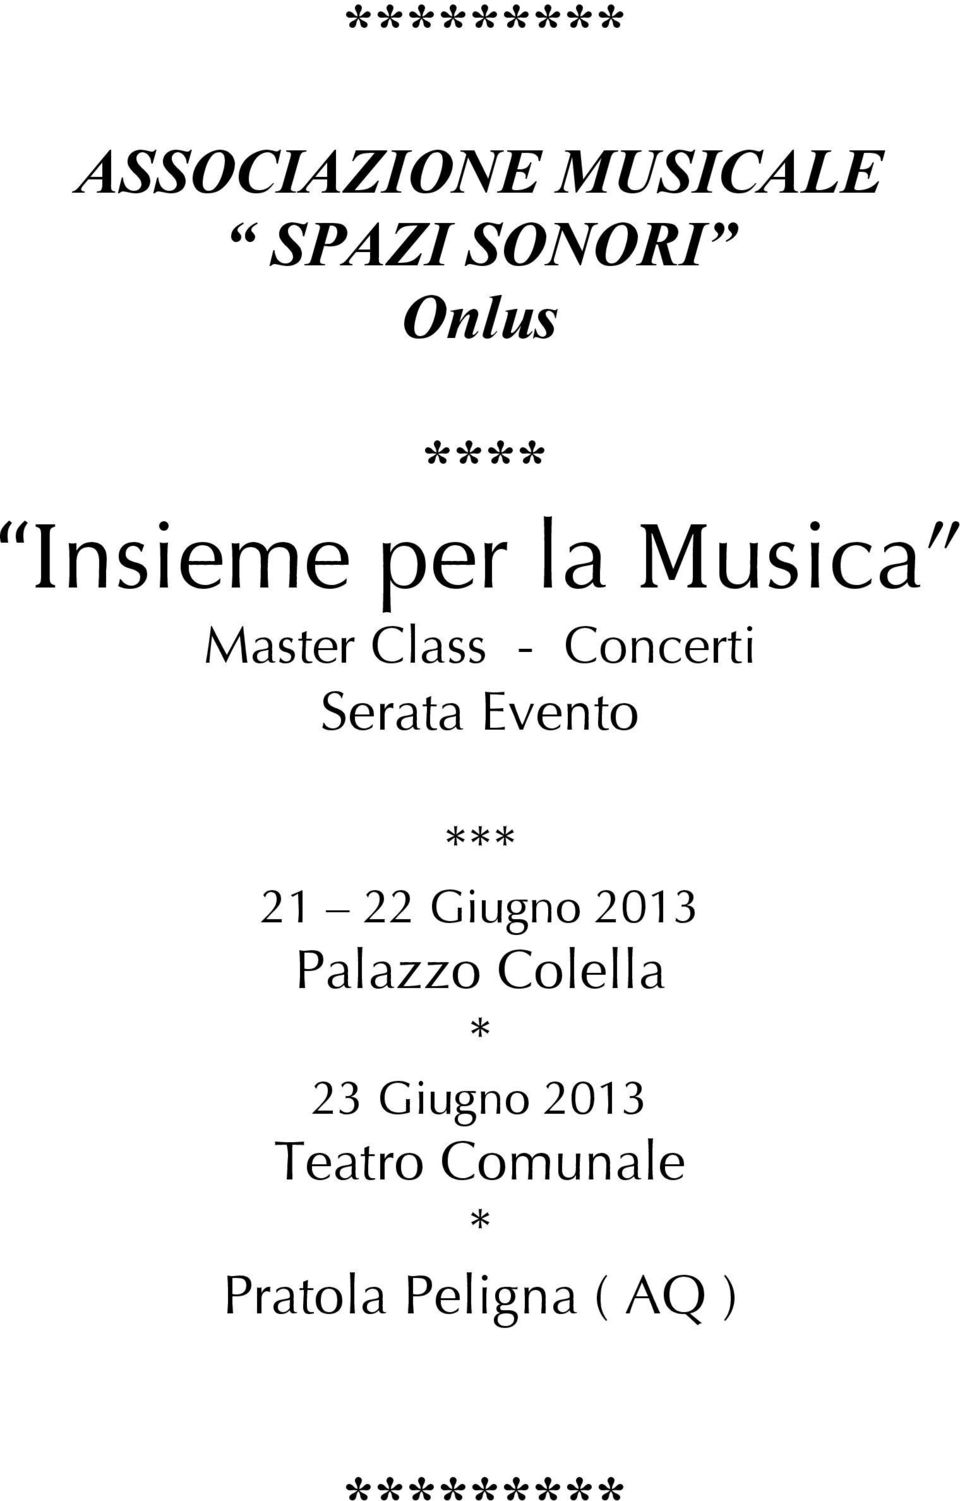 Evento *** 21 22 Giugno 2013 Palazzo Colella * 23